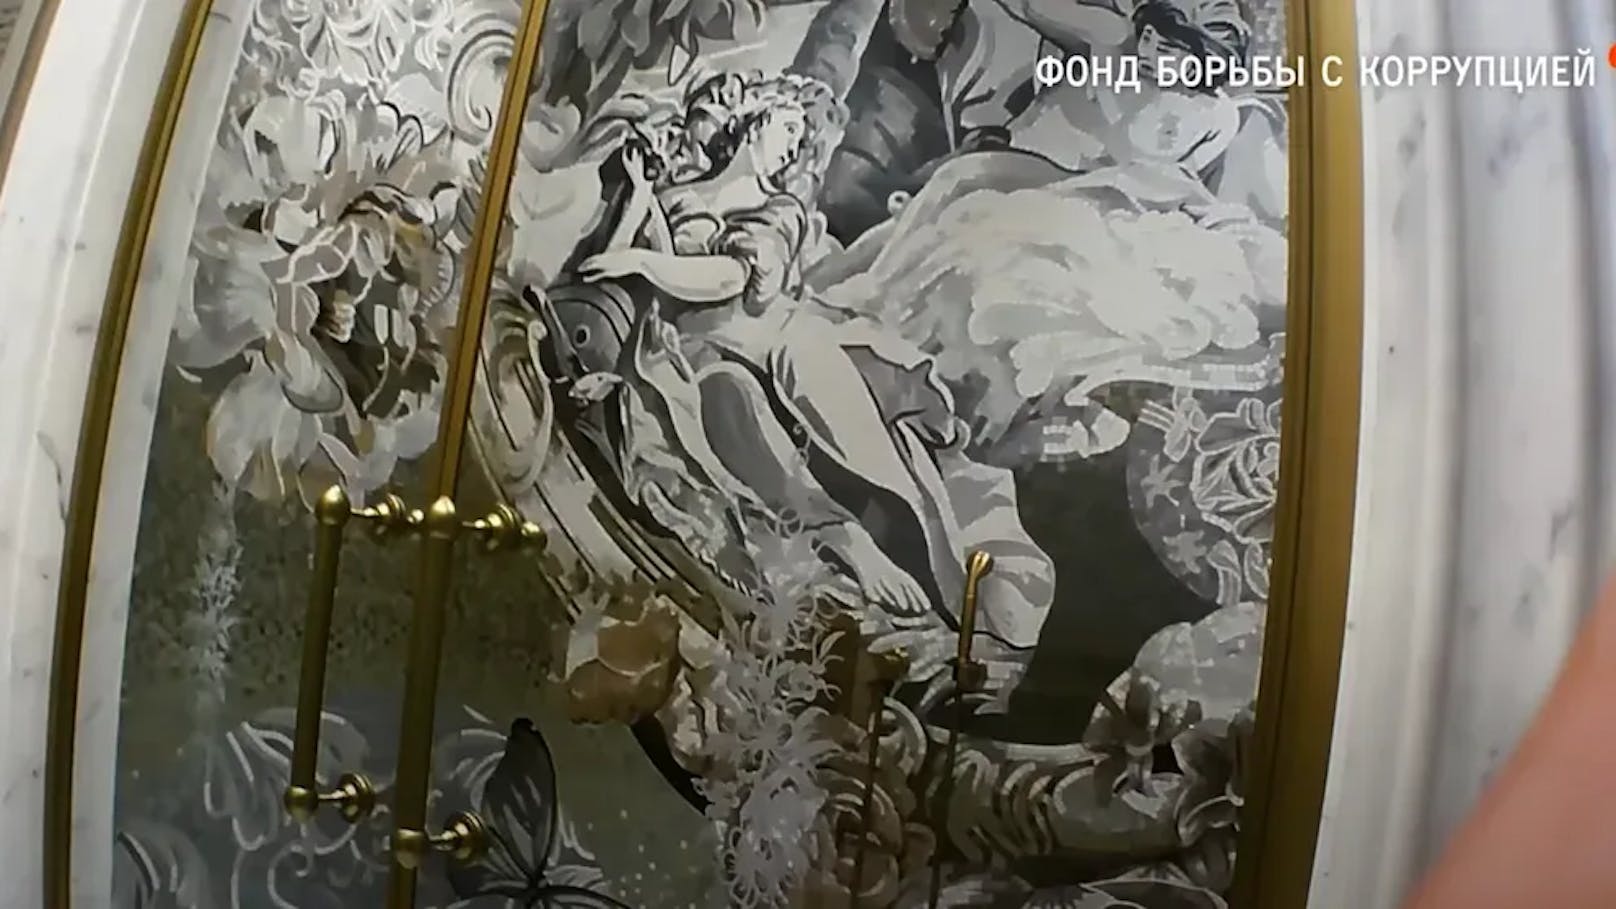 Engel-Mosaike und Goldelemente zieren die Dusche von Wladimir Putin.